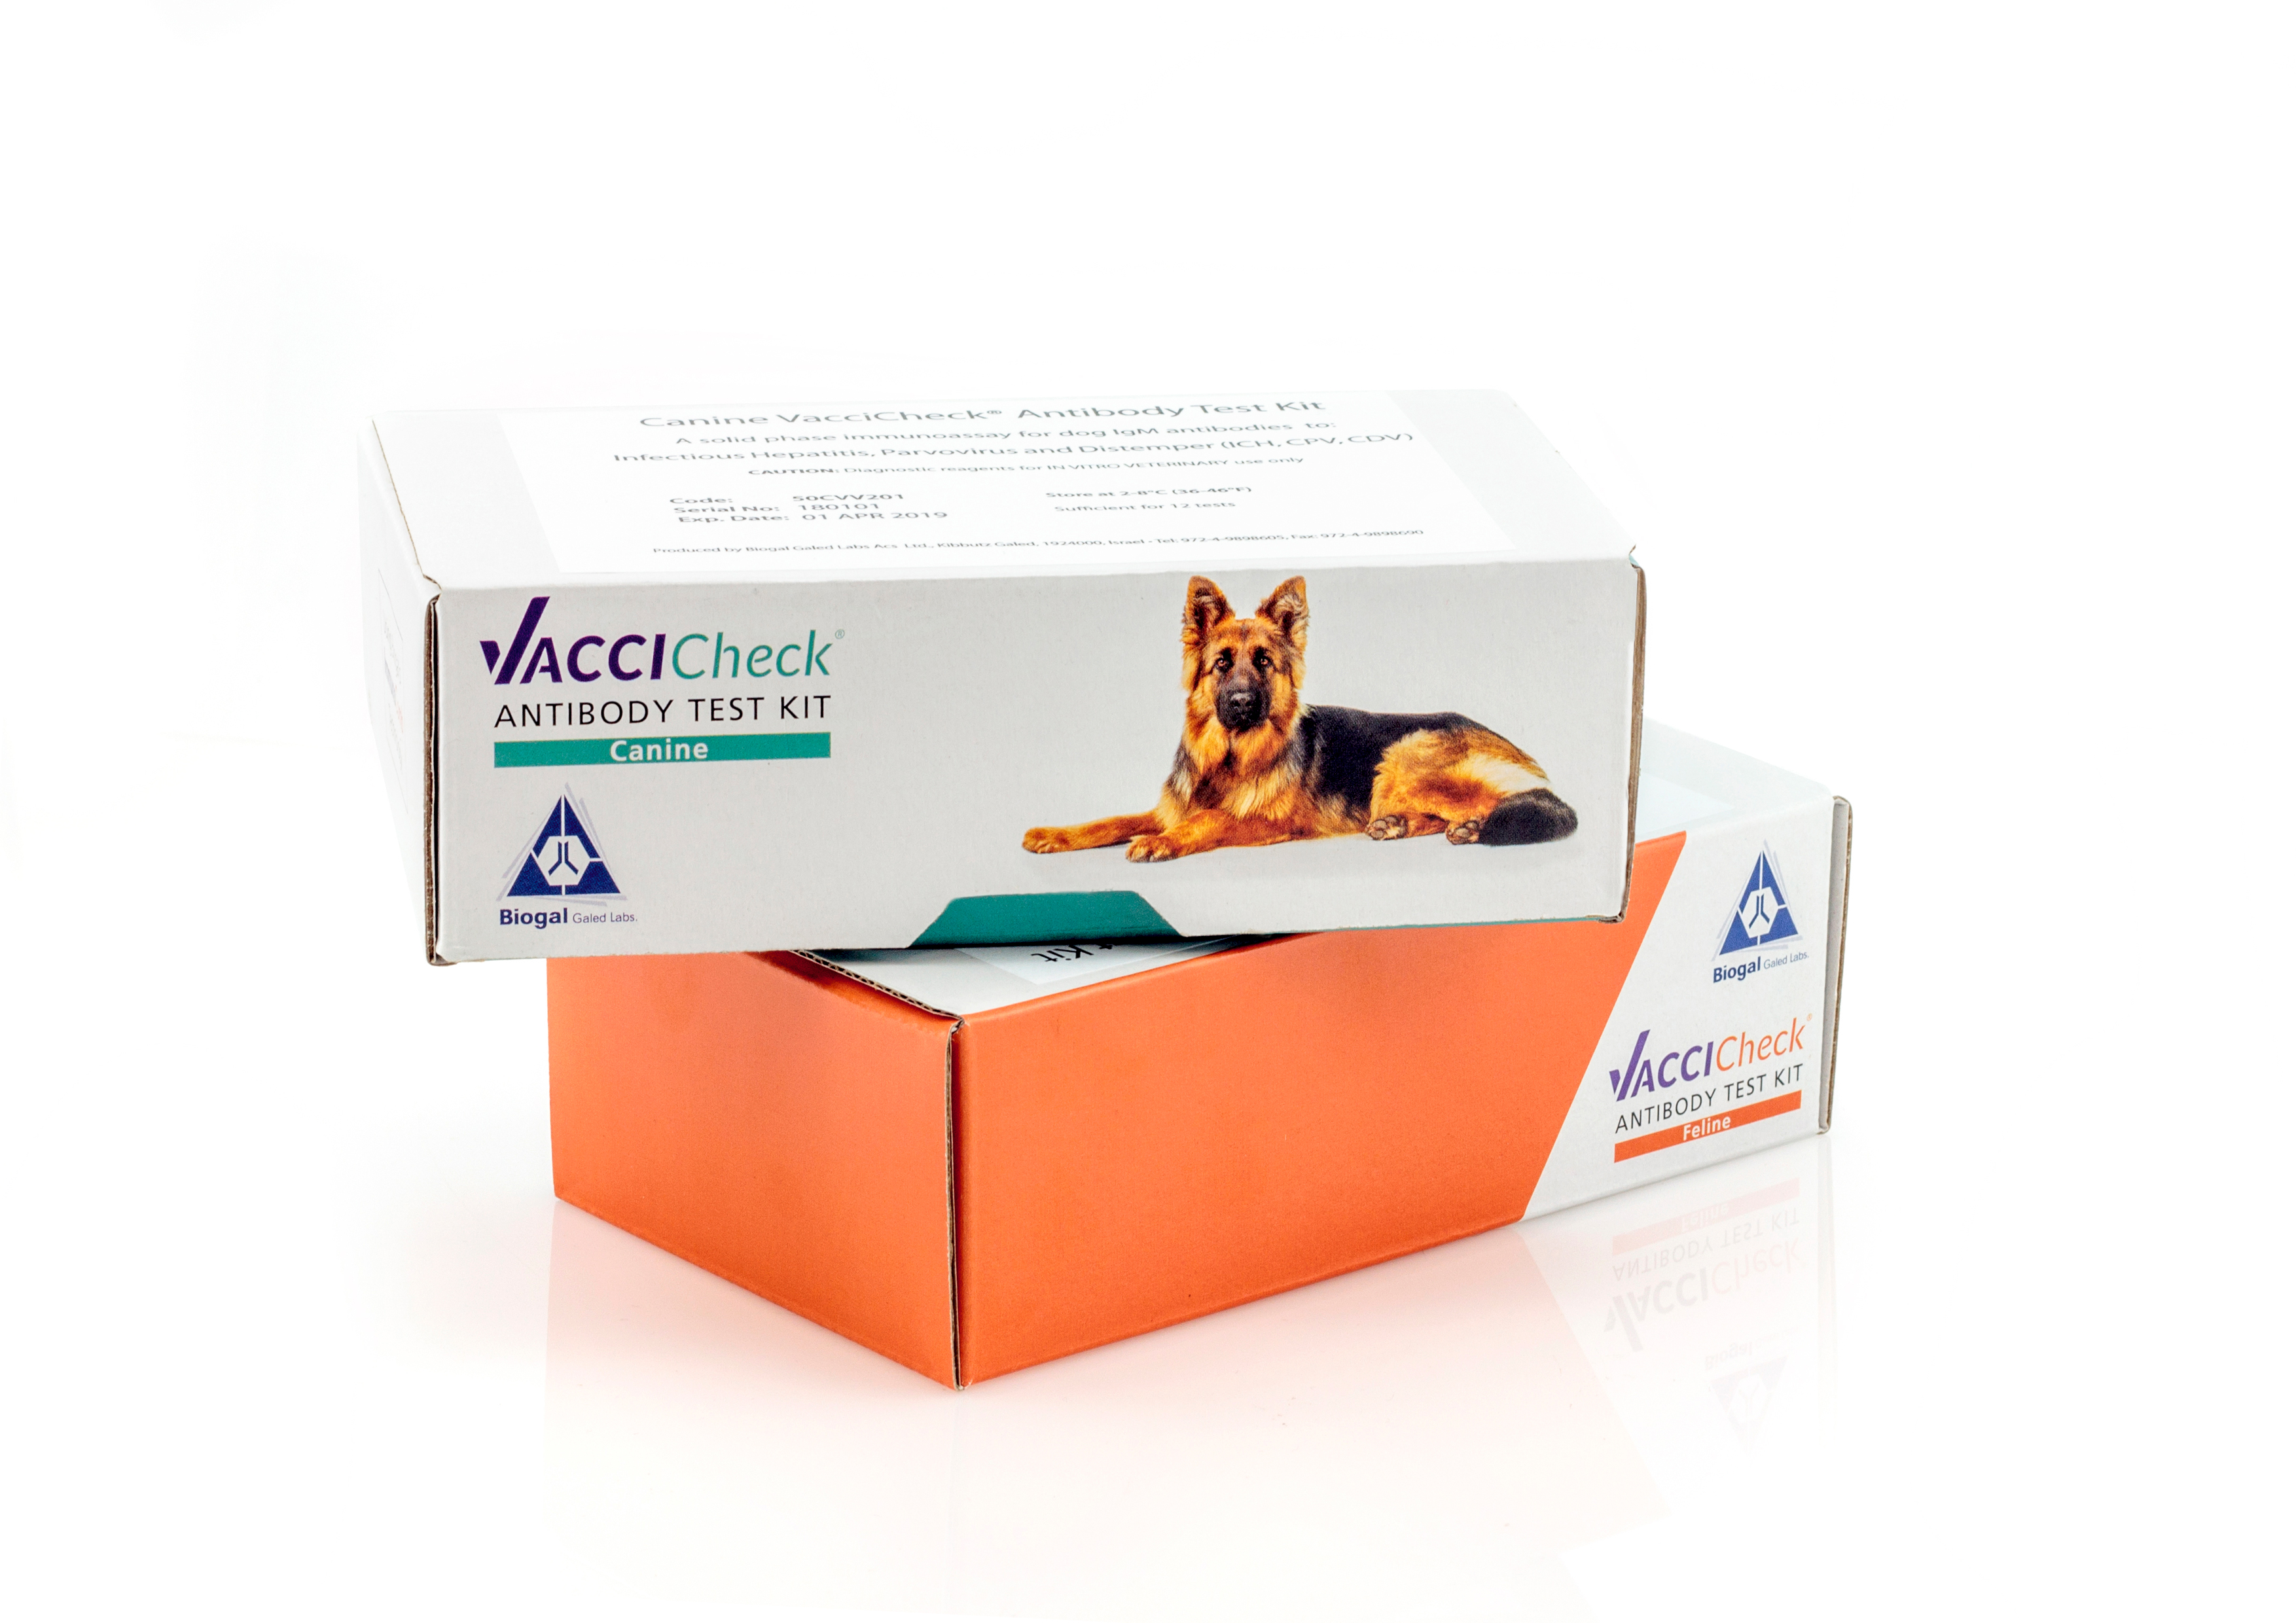 קיט ביוגל לבדיקת רמת נוגדני חיסון IgG בכלב (12 בדיקות)